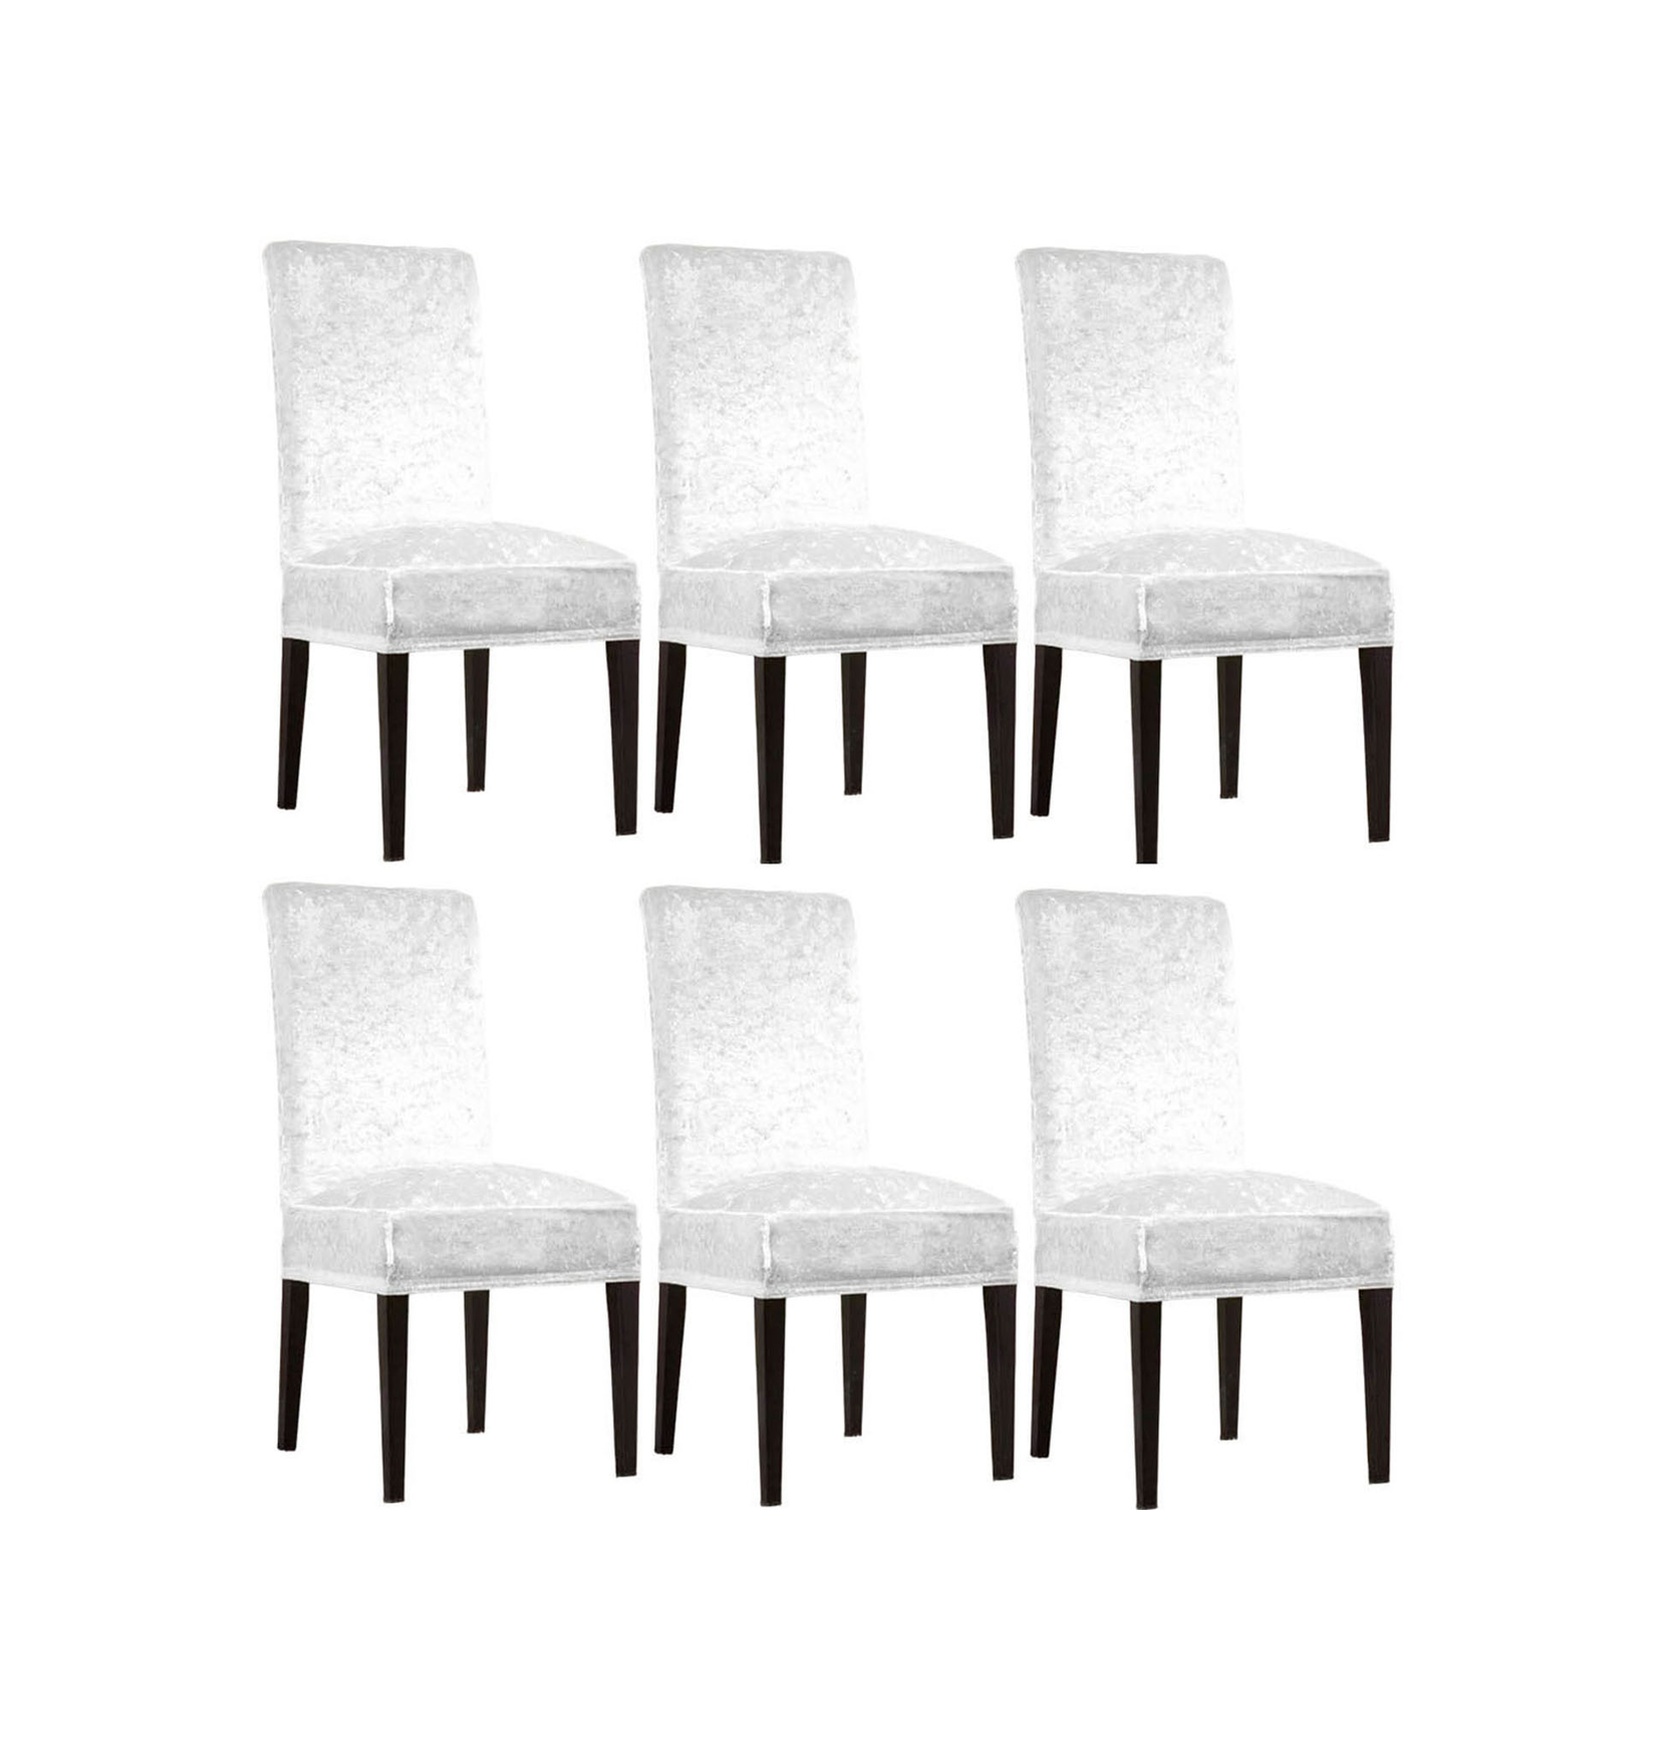 İpek Kadife 6'lı Sandalye Kılıfı Likralı Lastikli Kadife Sandalye Örtüsü 6 Adet - Beyaz